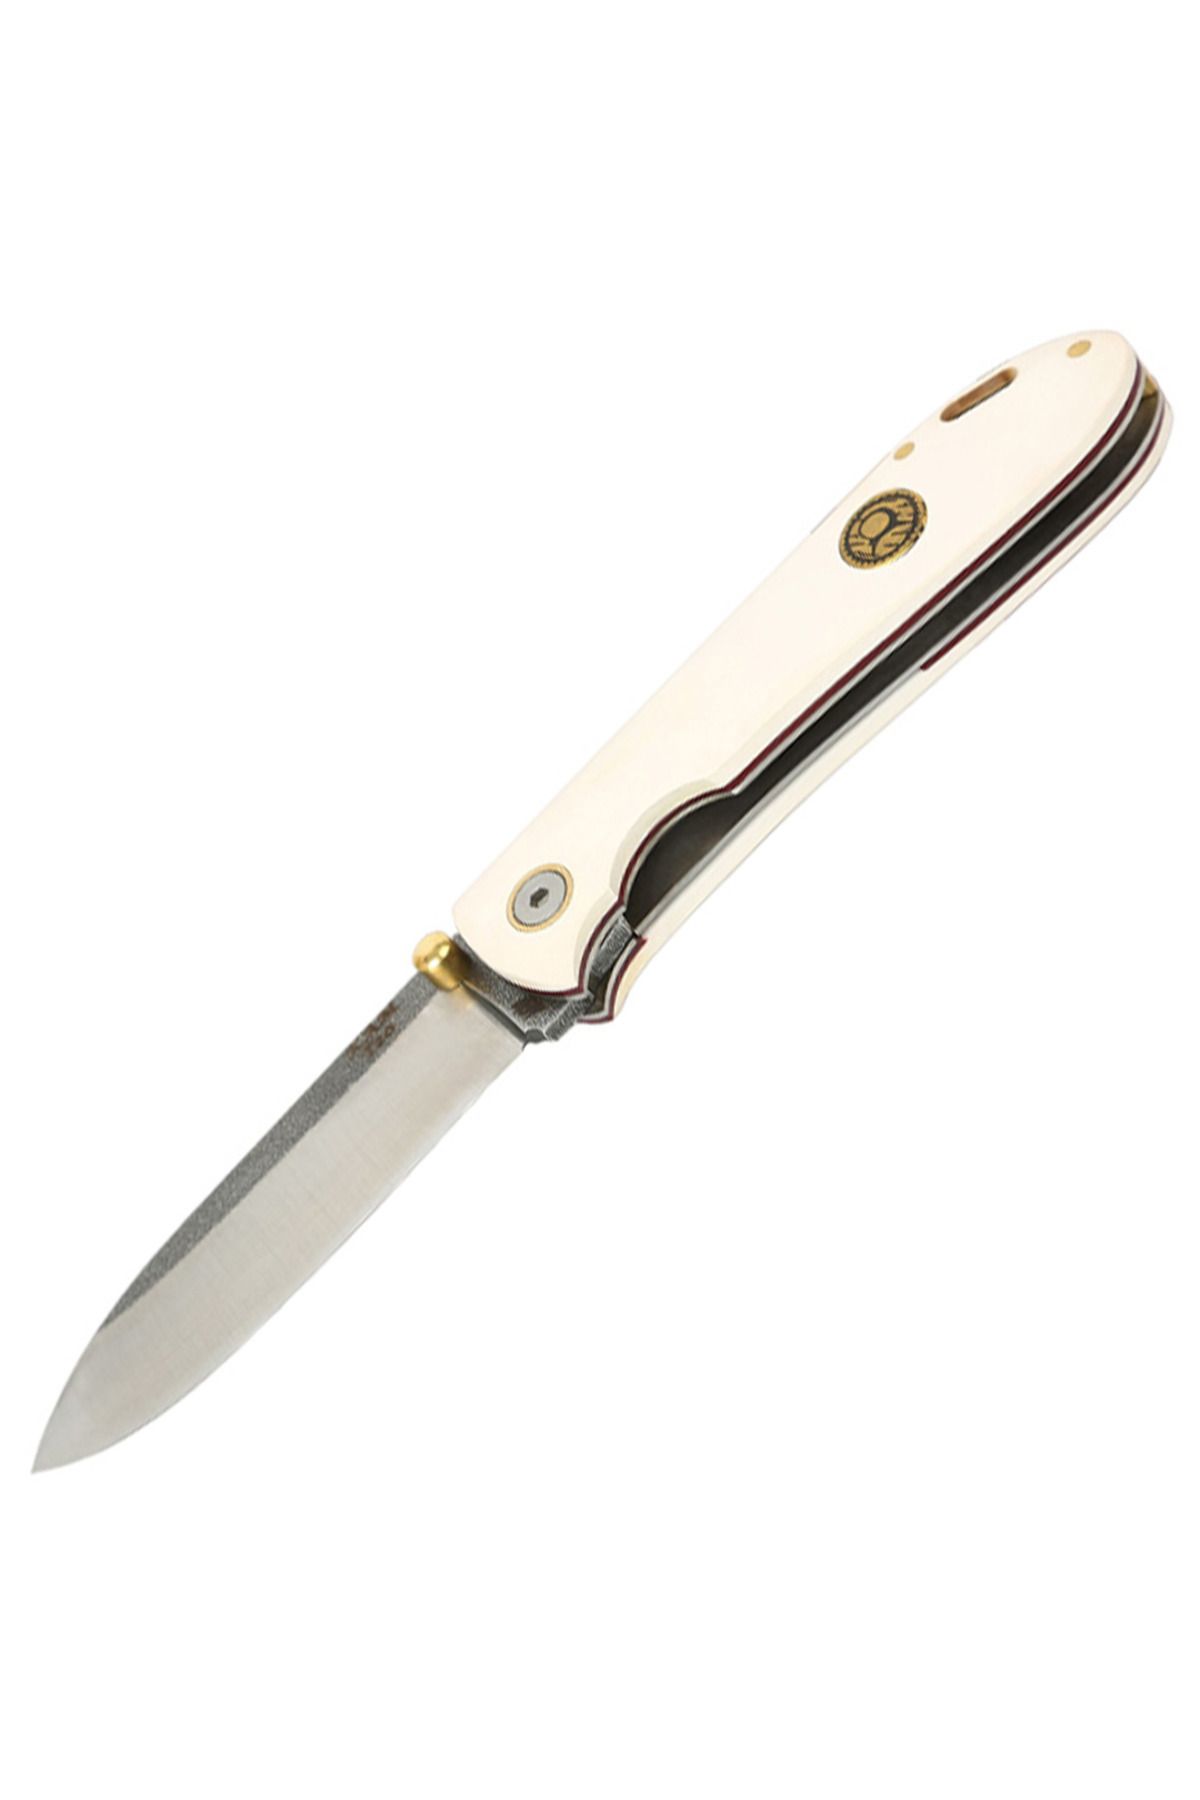 KAM KNIFE - T20 - N690 Çelik - Beyaz Kabza- Çakı